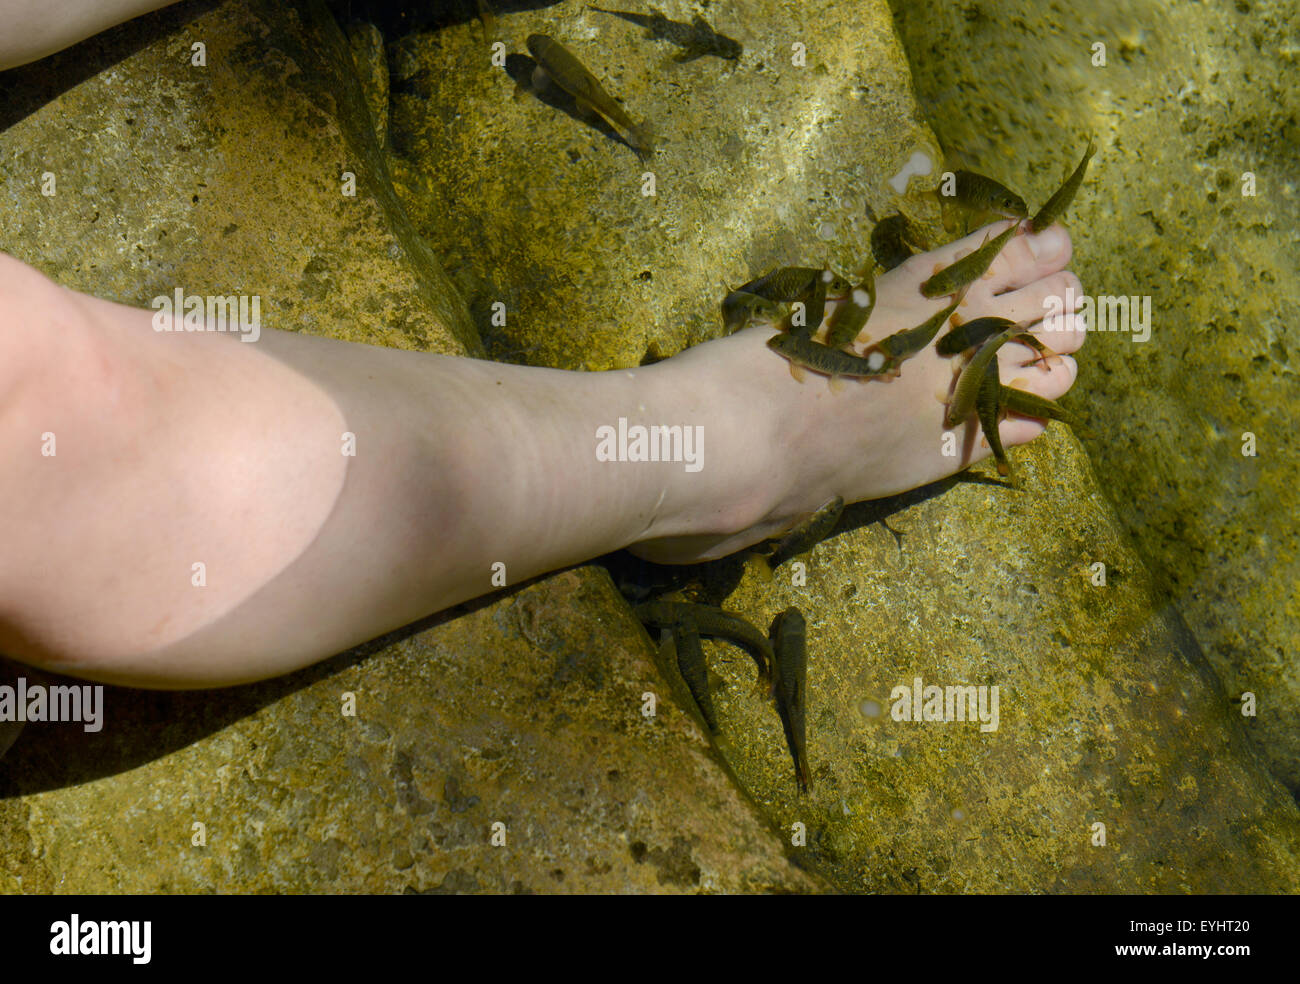 Banjaran Hot Springs, knabbern Garra Rufa oder Arzt Fisch am Fuße des einer Person, die eine Spa-Behandlung, Malaysia Stockfoto